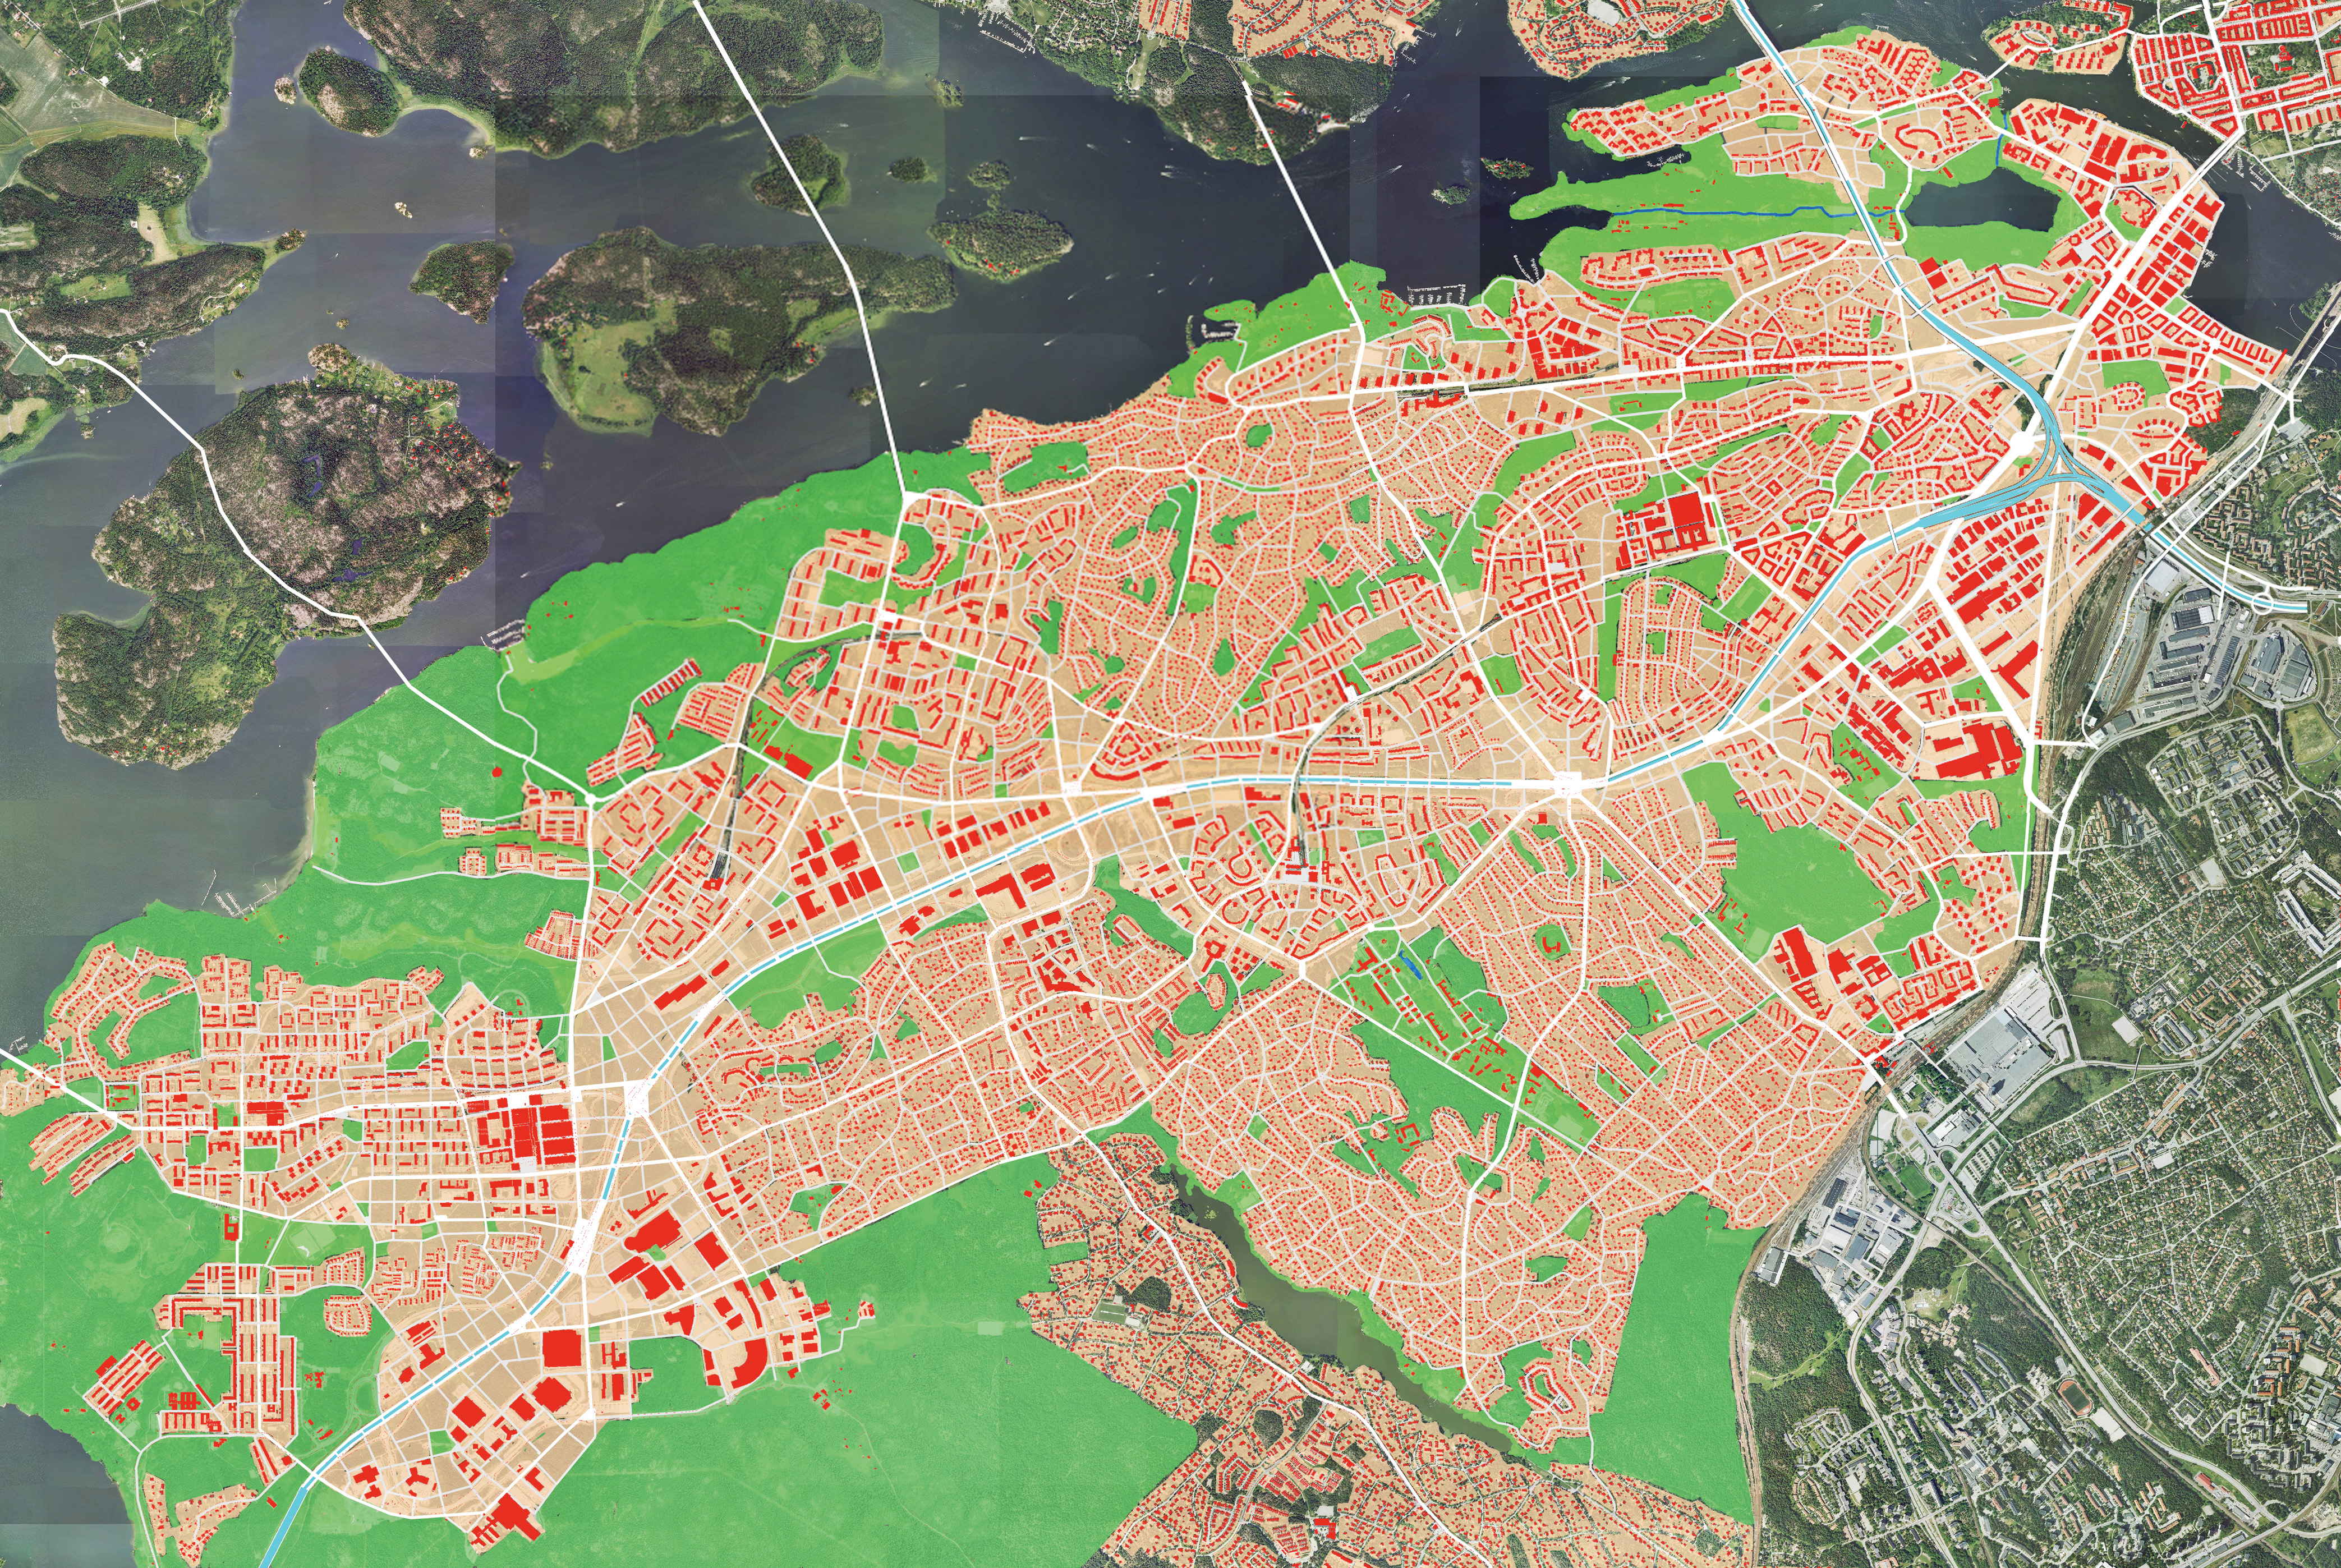 Karta Över Storstockholm - Bing images